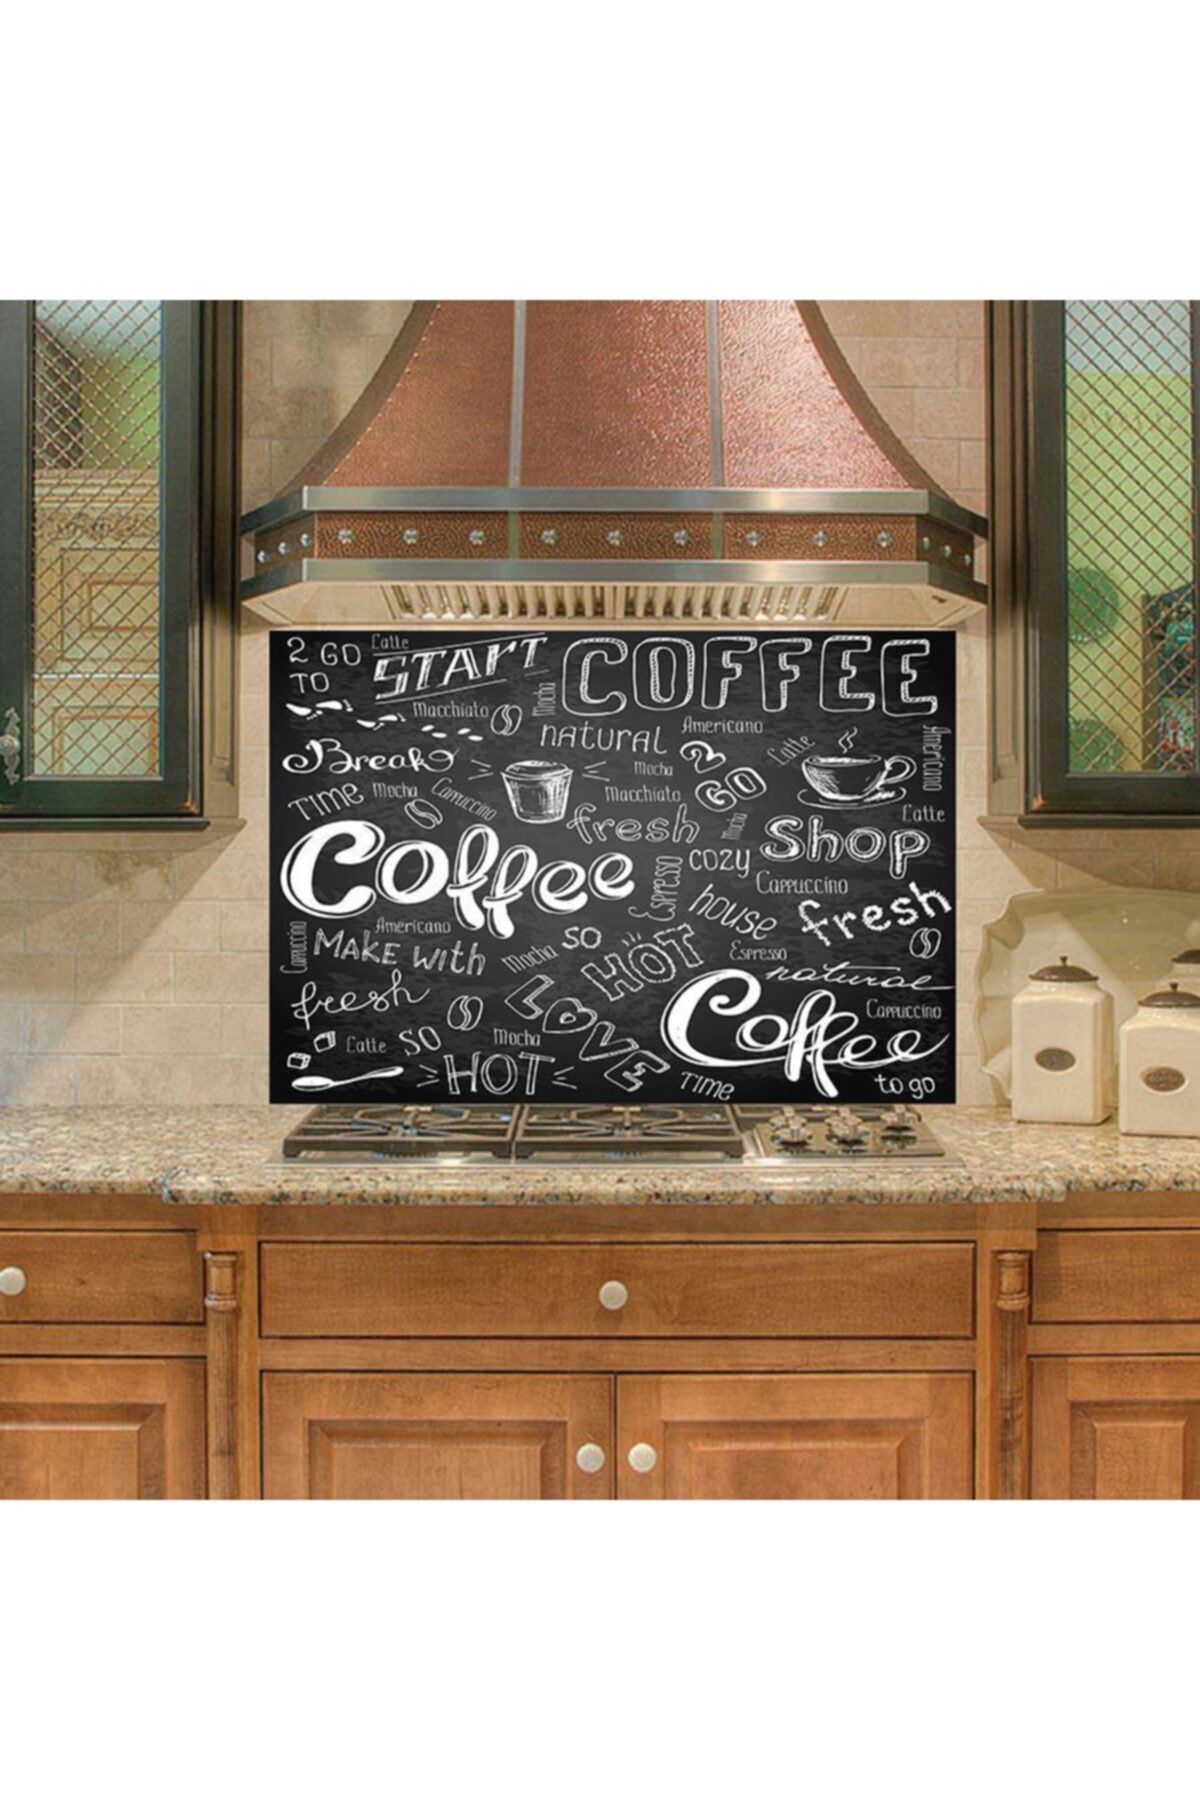 StickerArt Mutfak Duvar Tezgah Arası Ocak Arkası Sticker Kaplama Coffee Shop